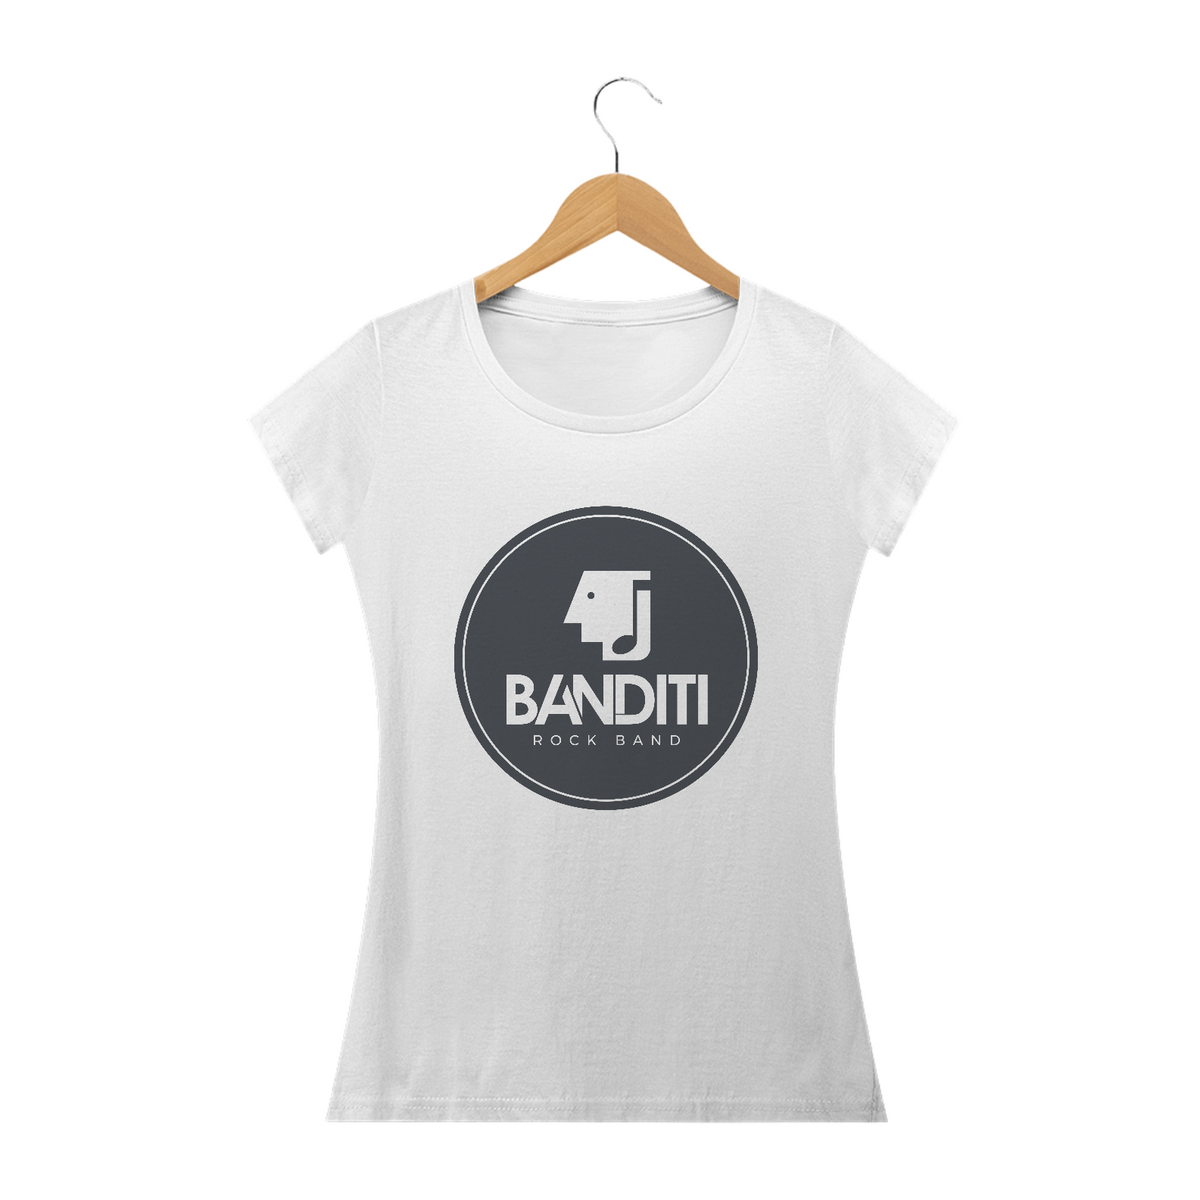 Nome do produto: Camiseta Baby Long - Banditi Rock Band